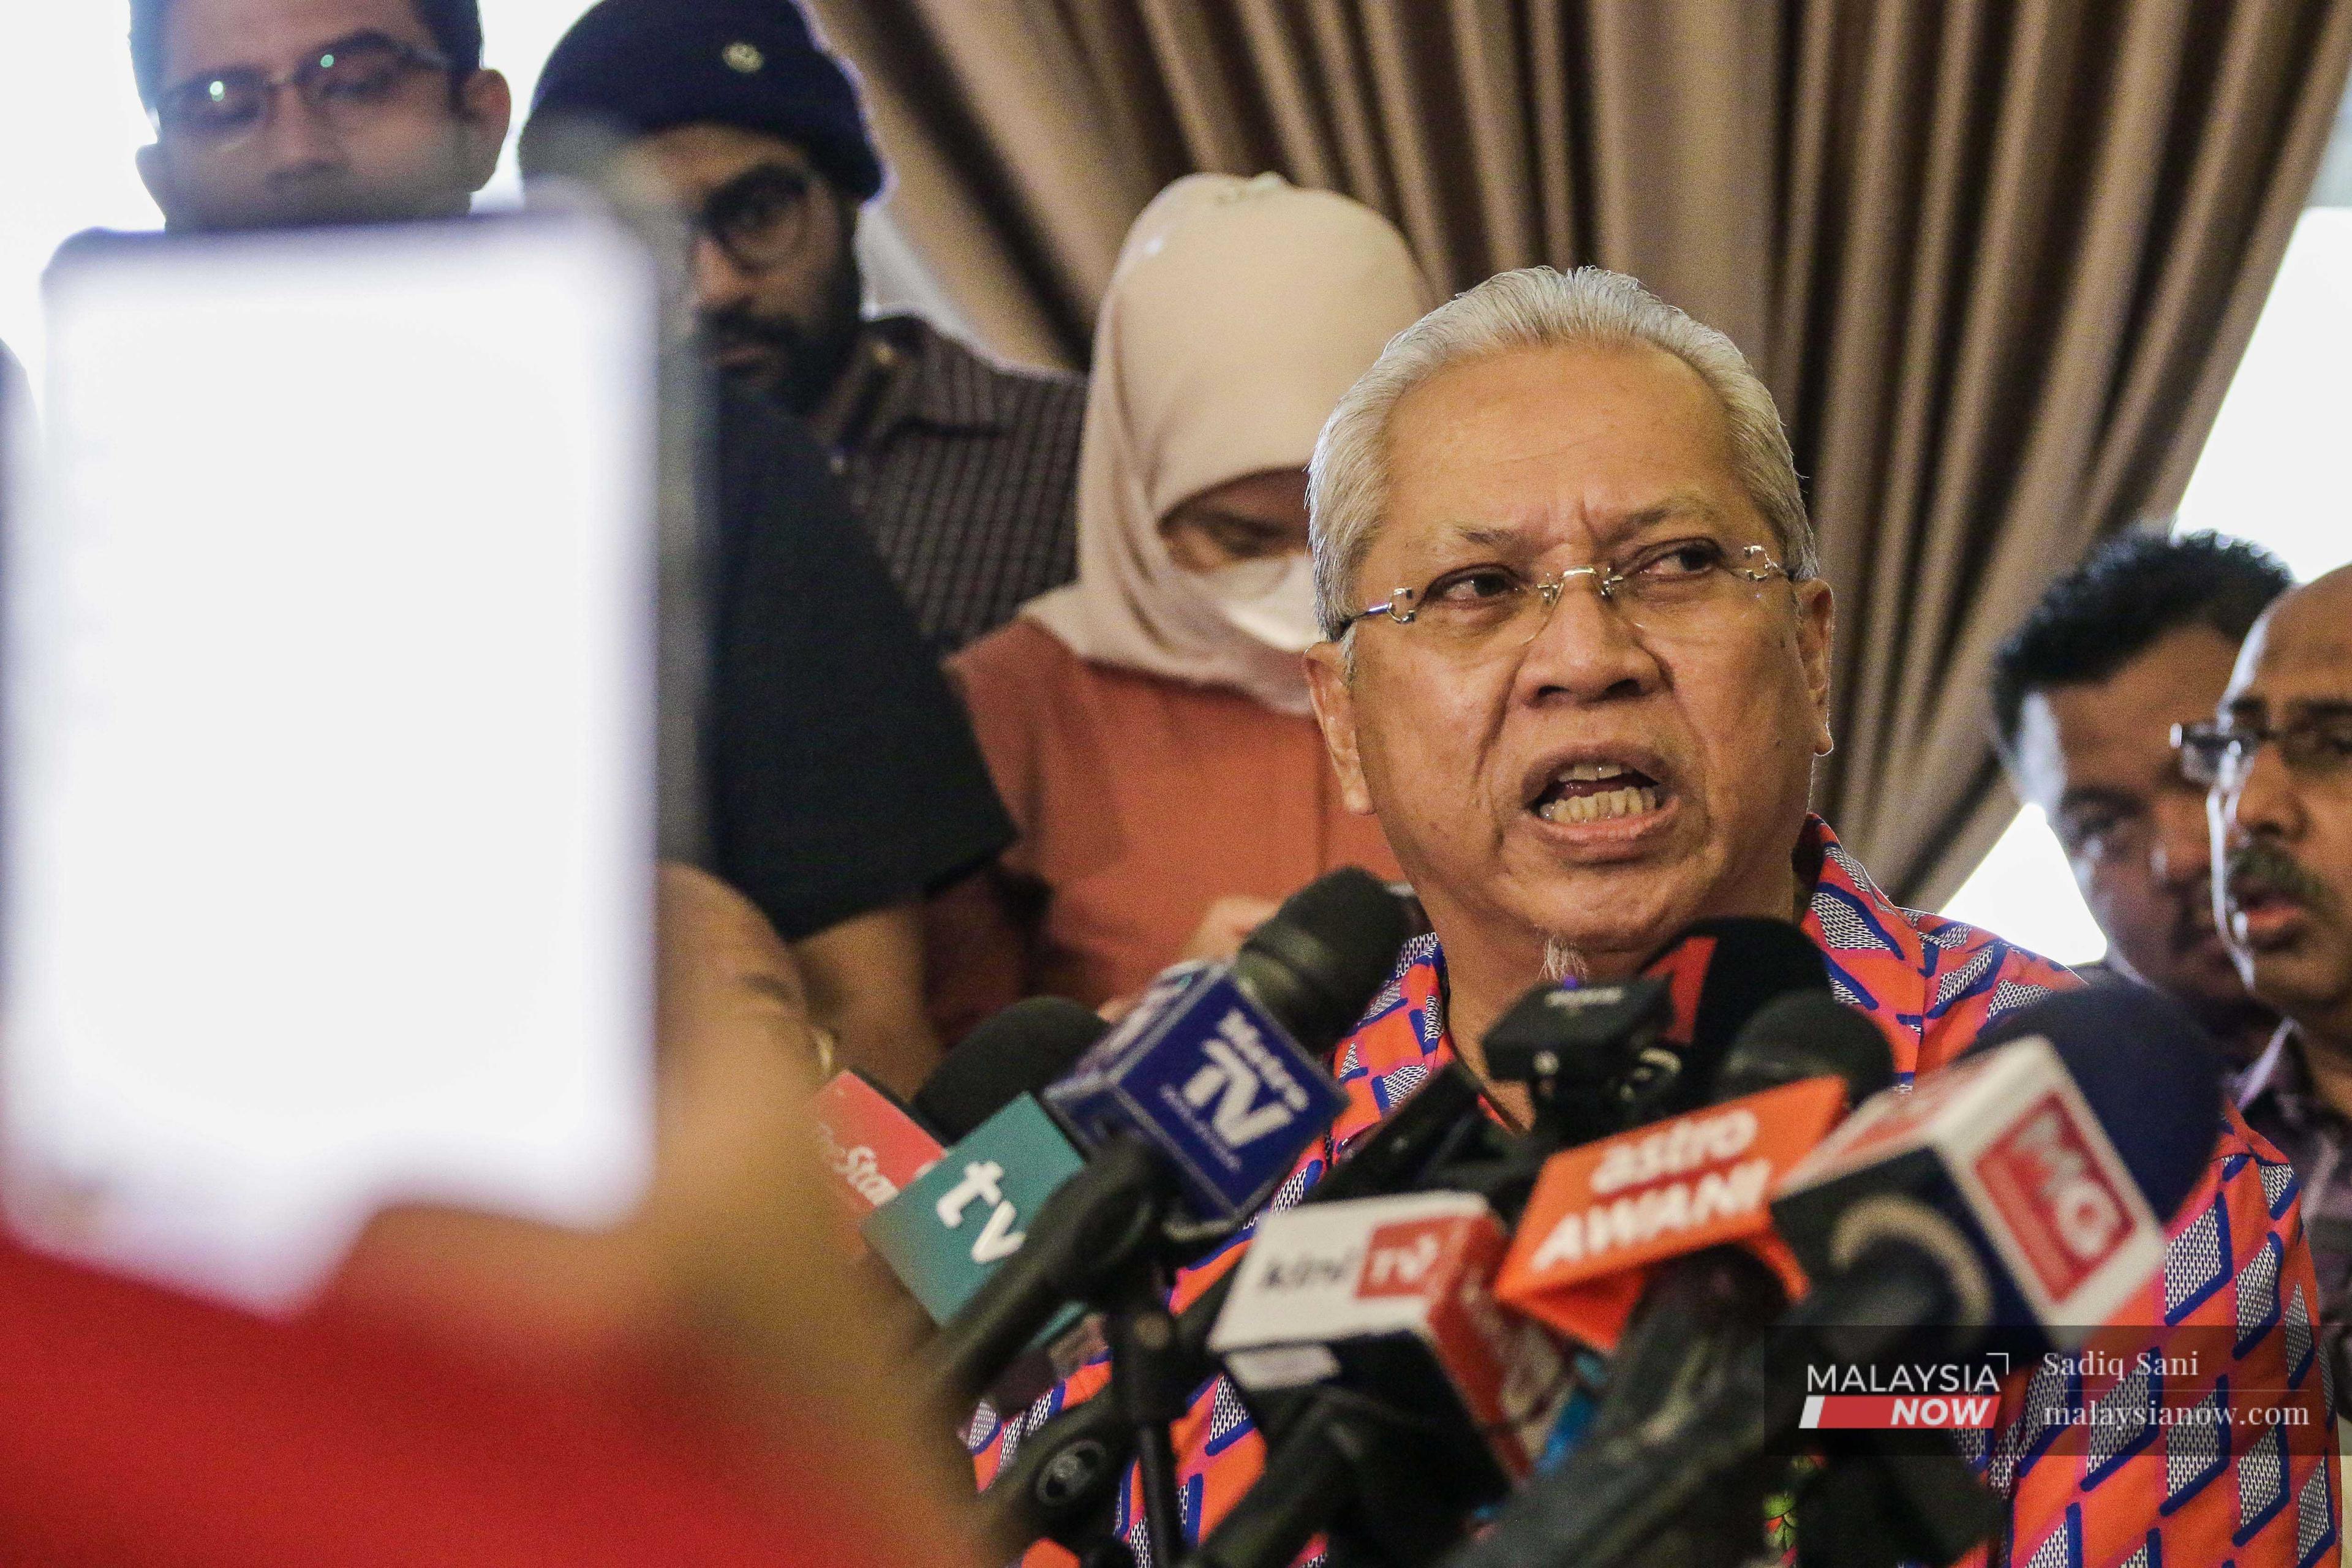 Ketua Umno Ketereh Annuar Musa bercakap pada sidang media di Kuala Lumpur hari ini.